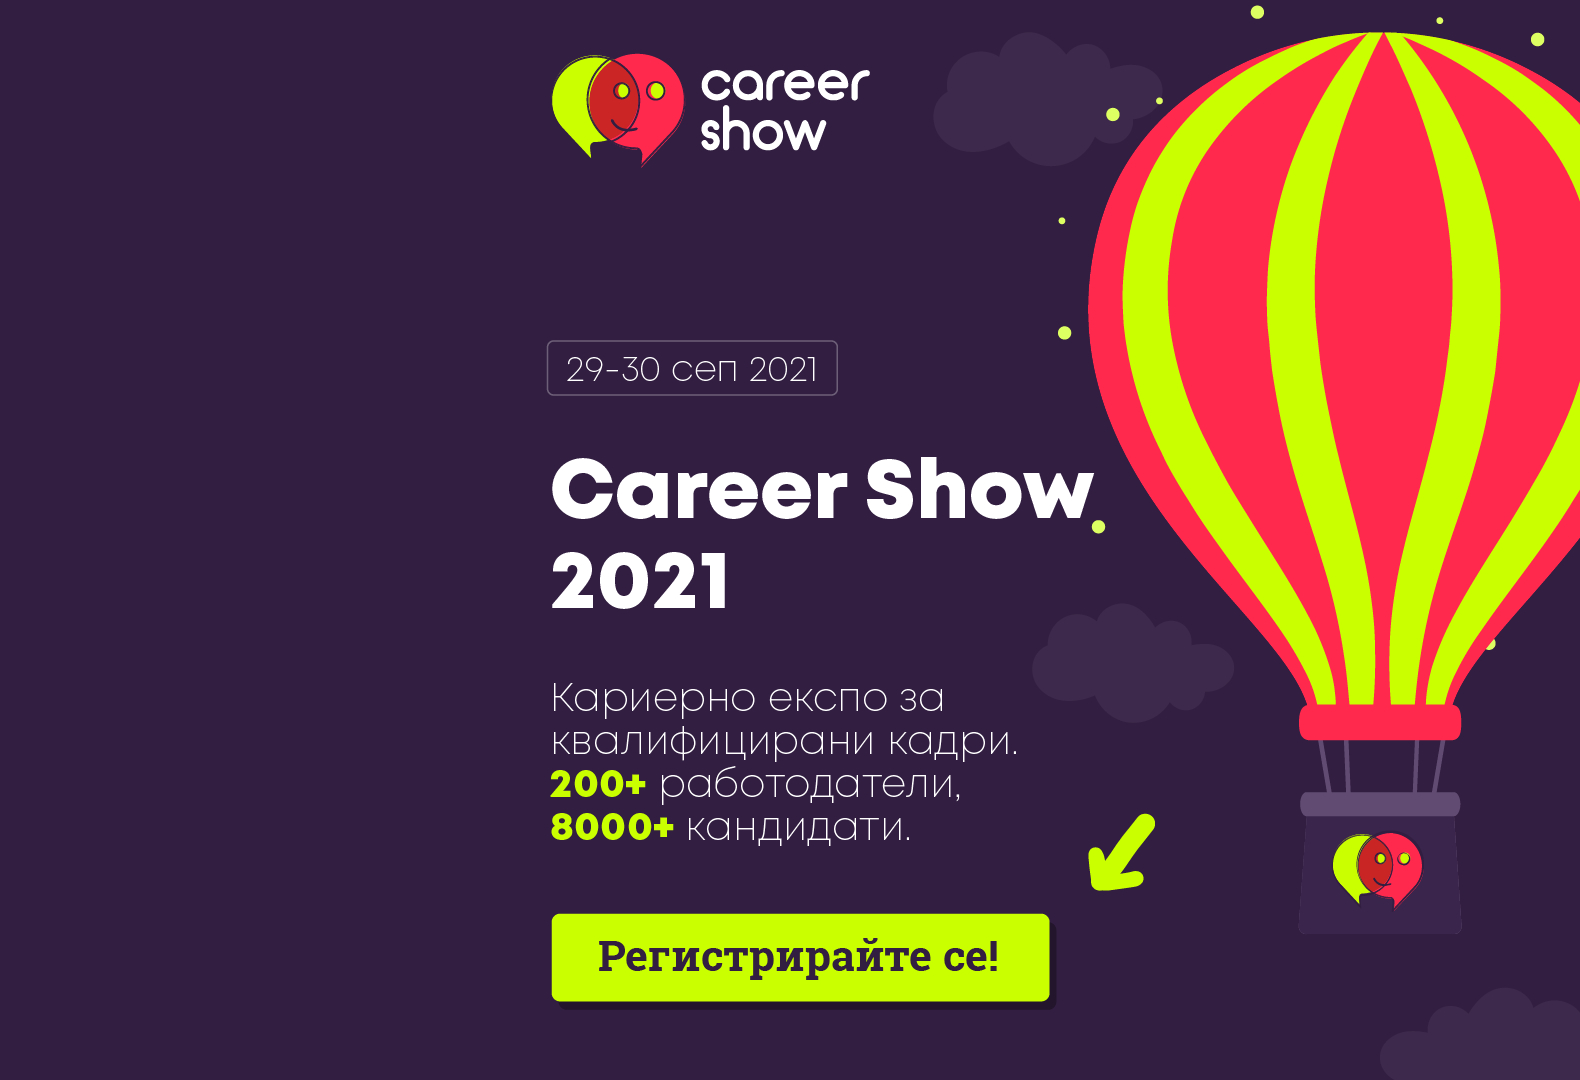 Българска стопанска камара е партньор на Career Show 2021